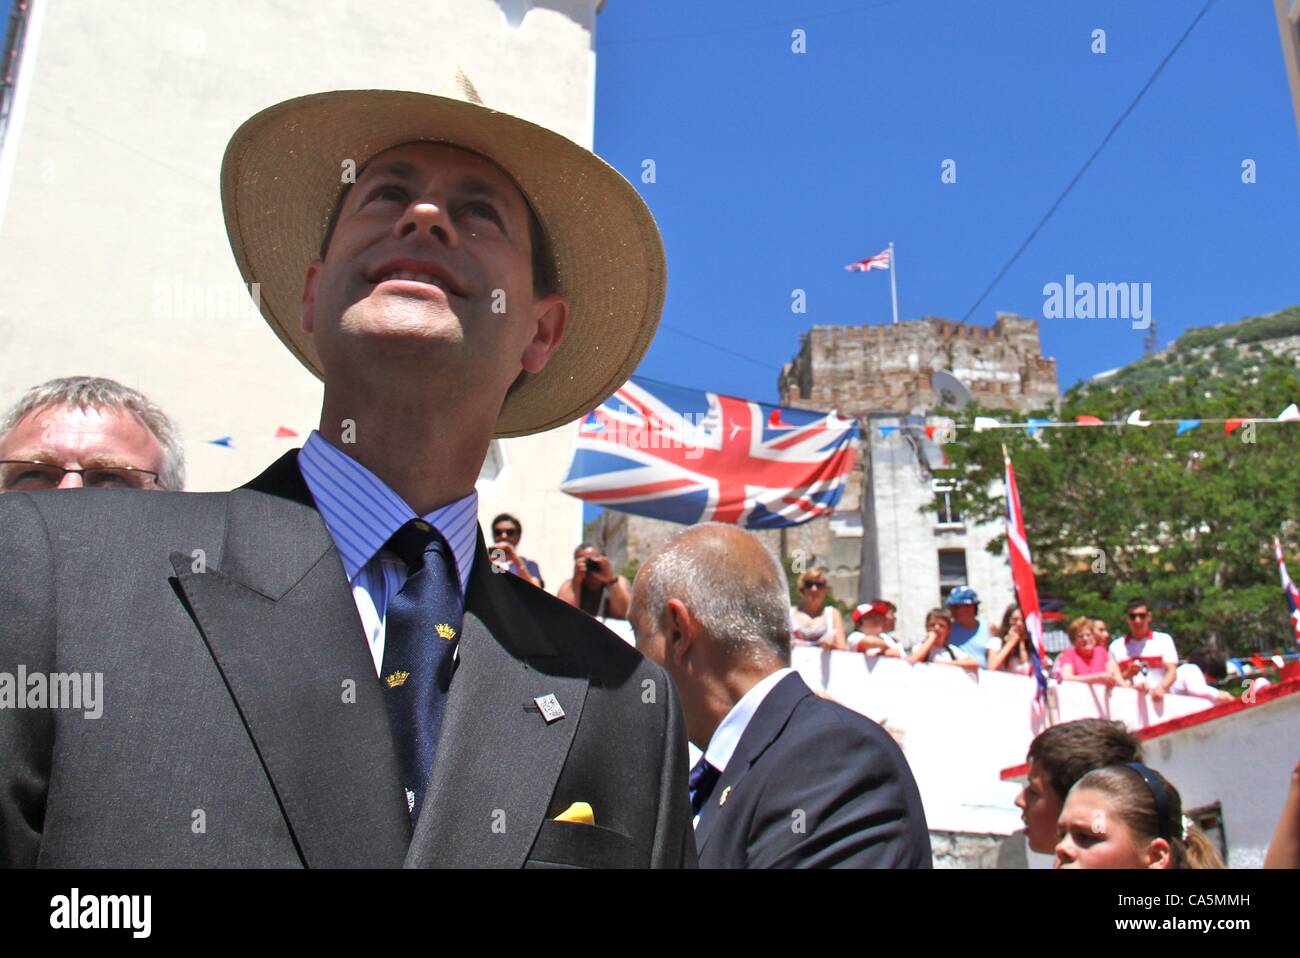 12/06/2012, Gibilterra. Il conte e la Contessa di Wessex Edward e Sophie visita Gibilterra come parte di diamante del Giubileo Royal Tour. Essi sono stati accolti da centinaia di fieri abitanti di Gibilterra britannico con bandiere. Foto Stock